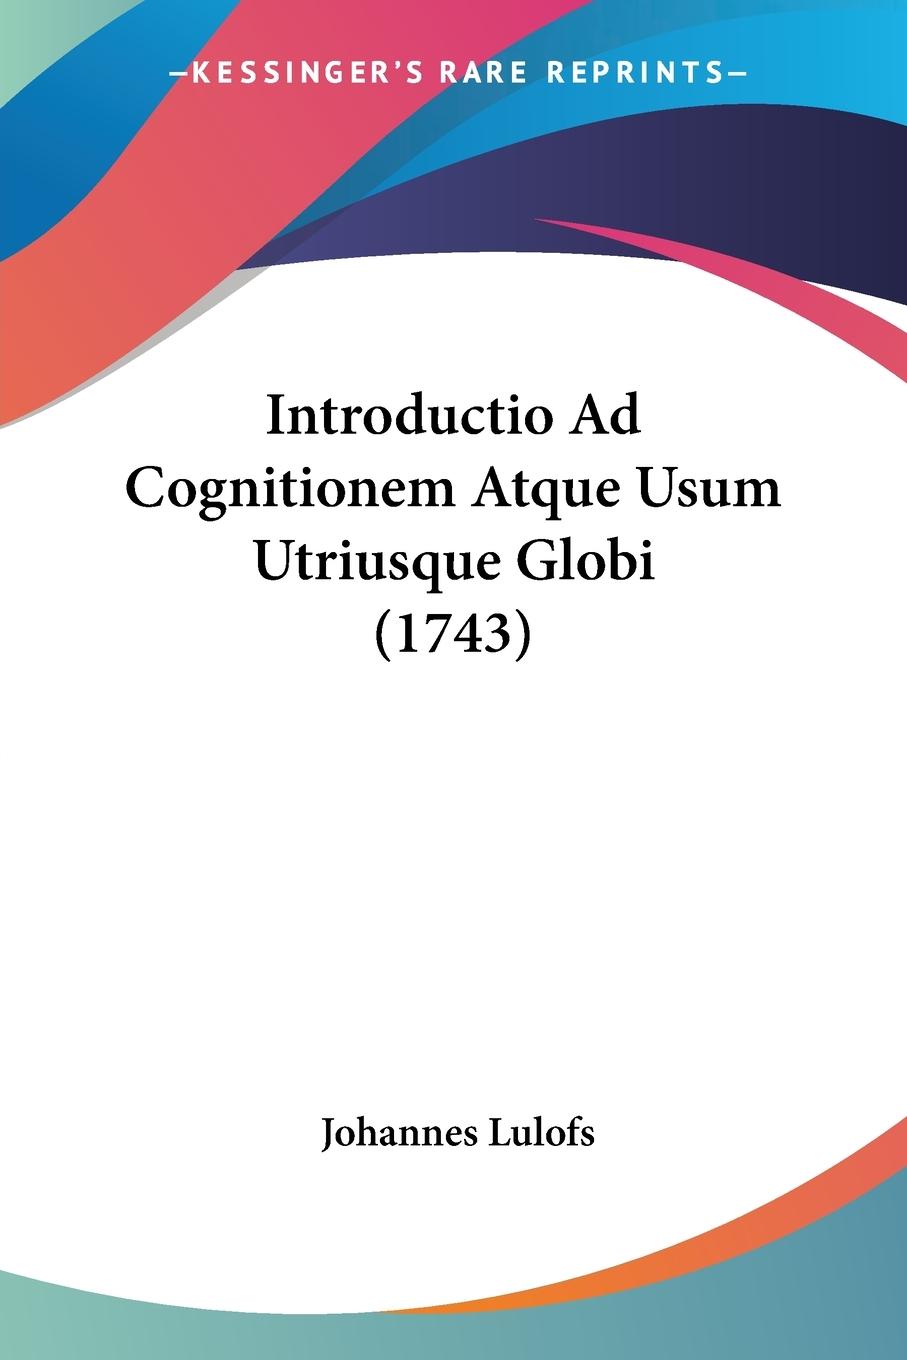 Introductio Ad Cognitionem Atque Usum Utriusque Globi (1743) - Lulofs, Johannes